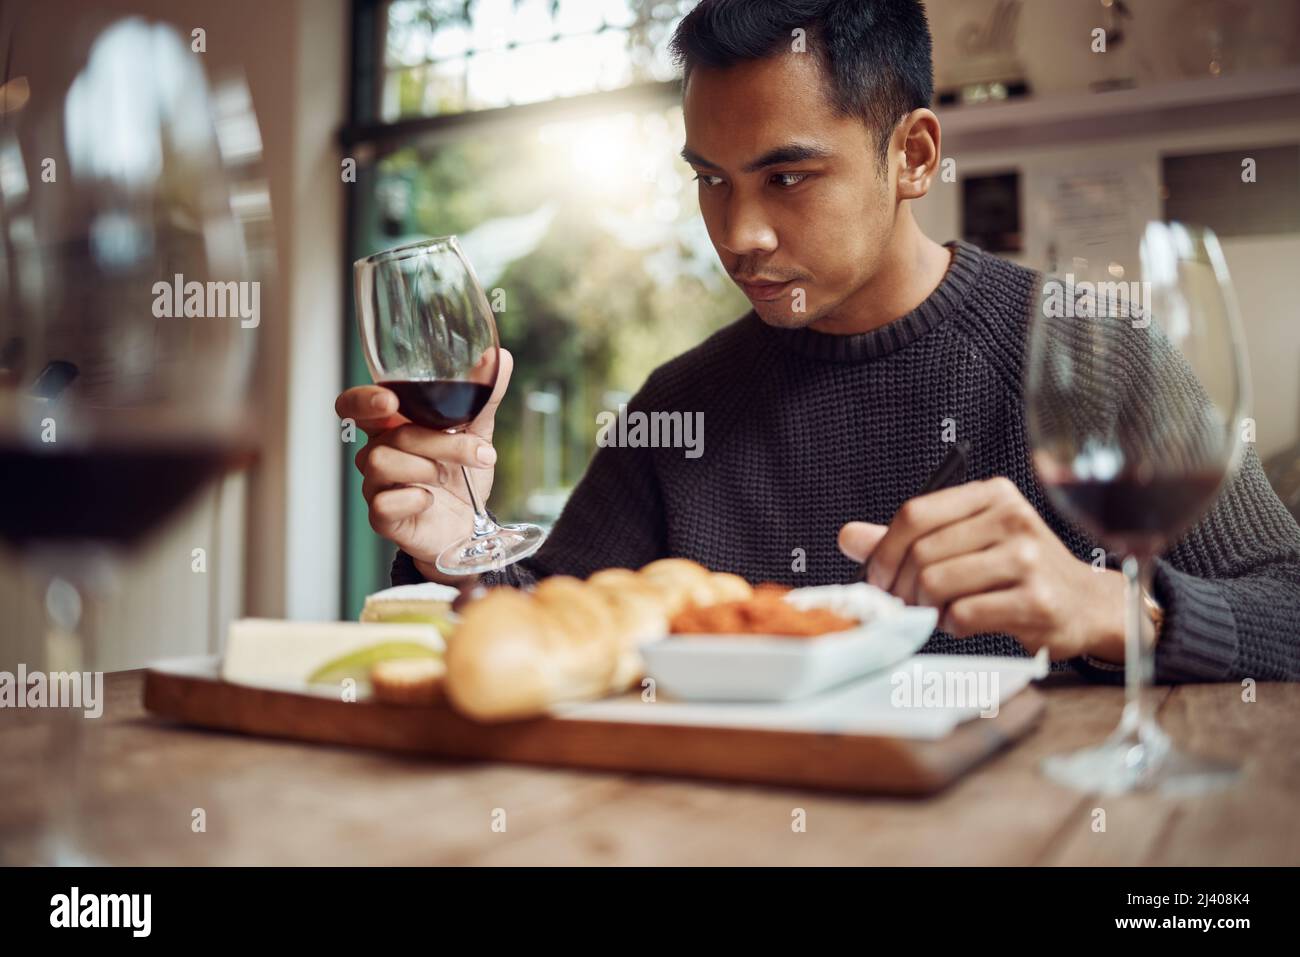 USA tutti i tuoi sensi. Shot di un uomo gustando un piatto di formaggi e degustando vini diversi. Foto Stock